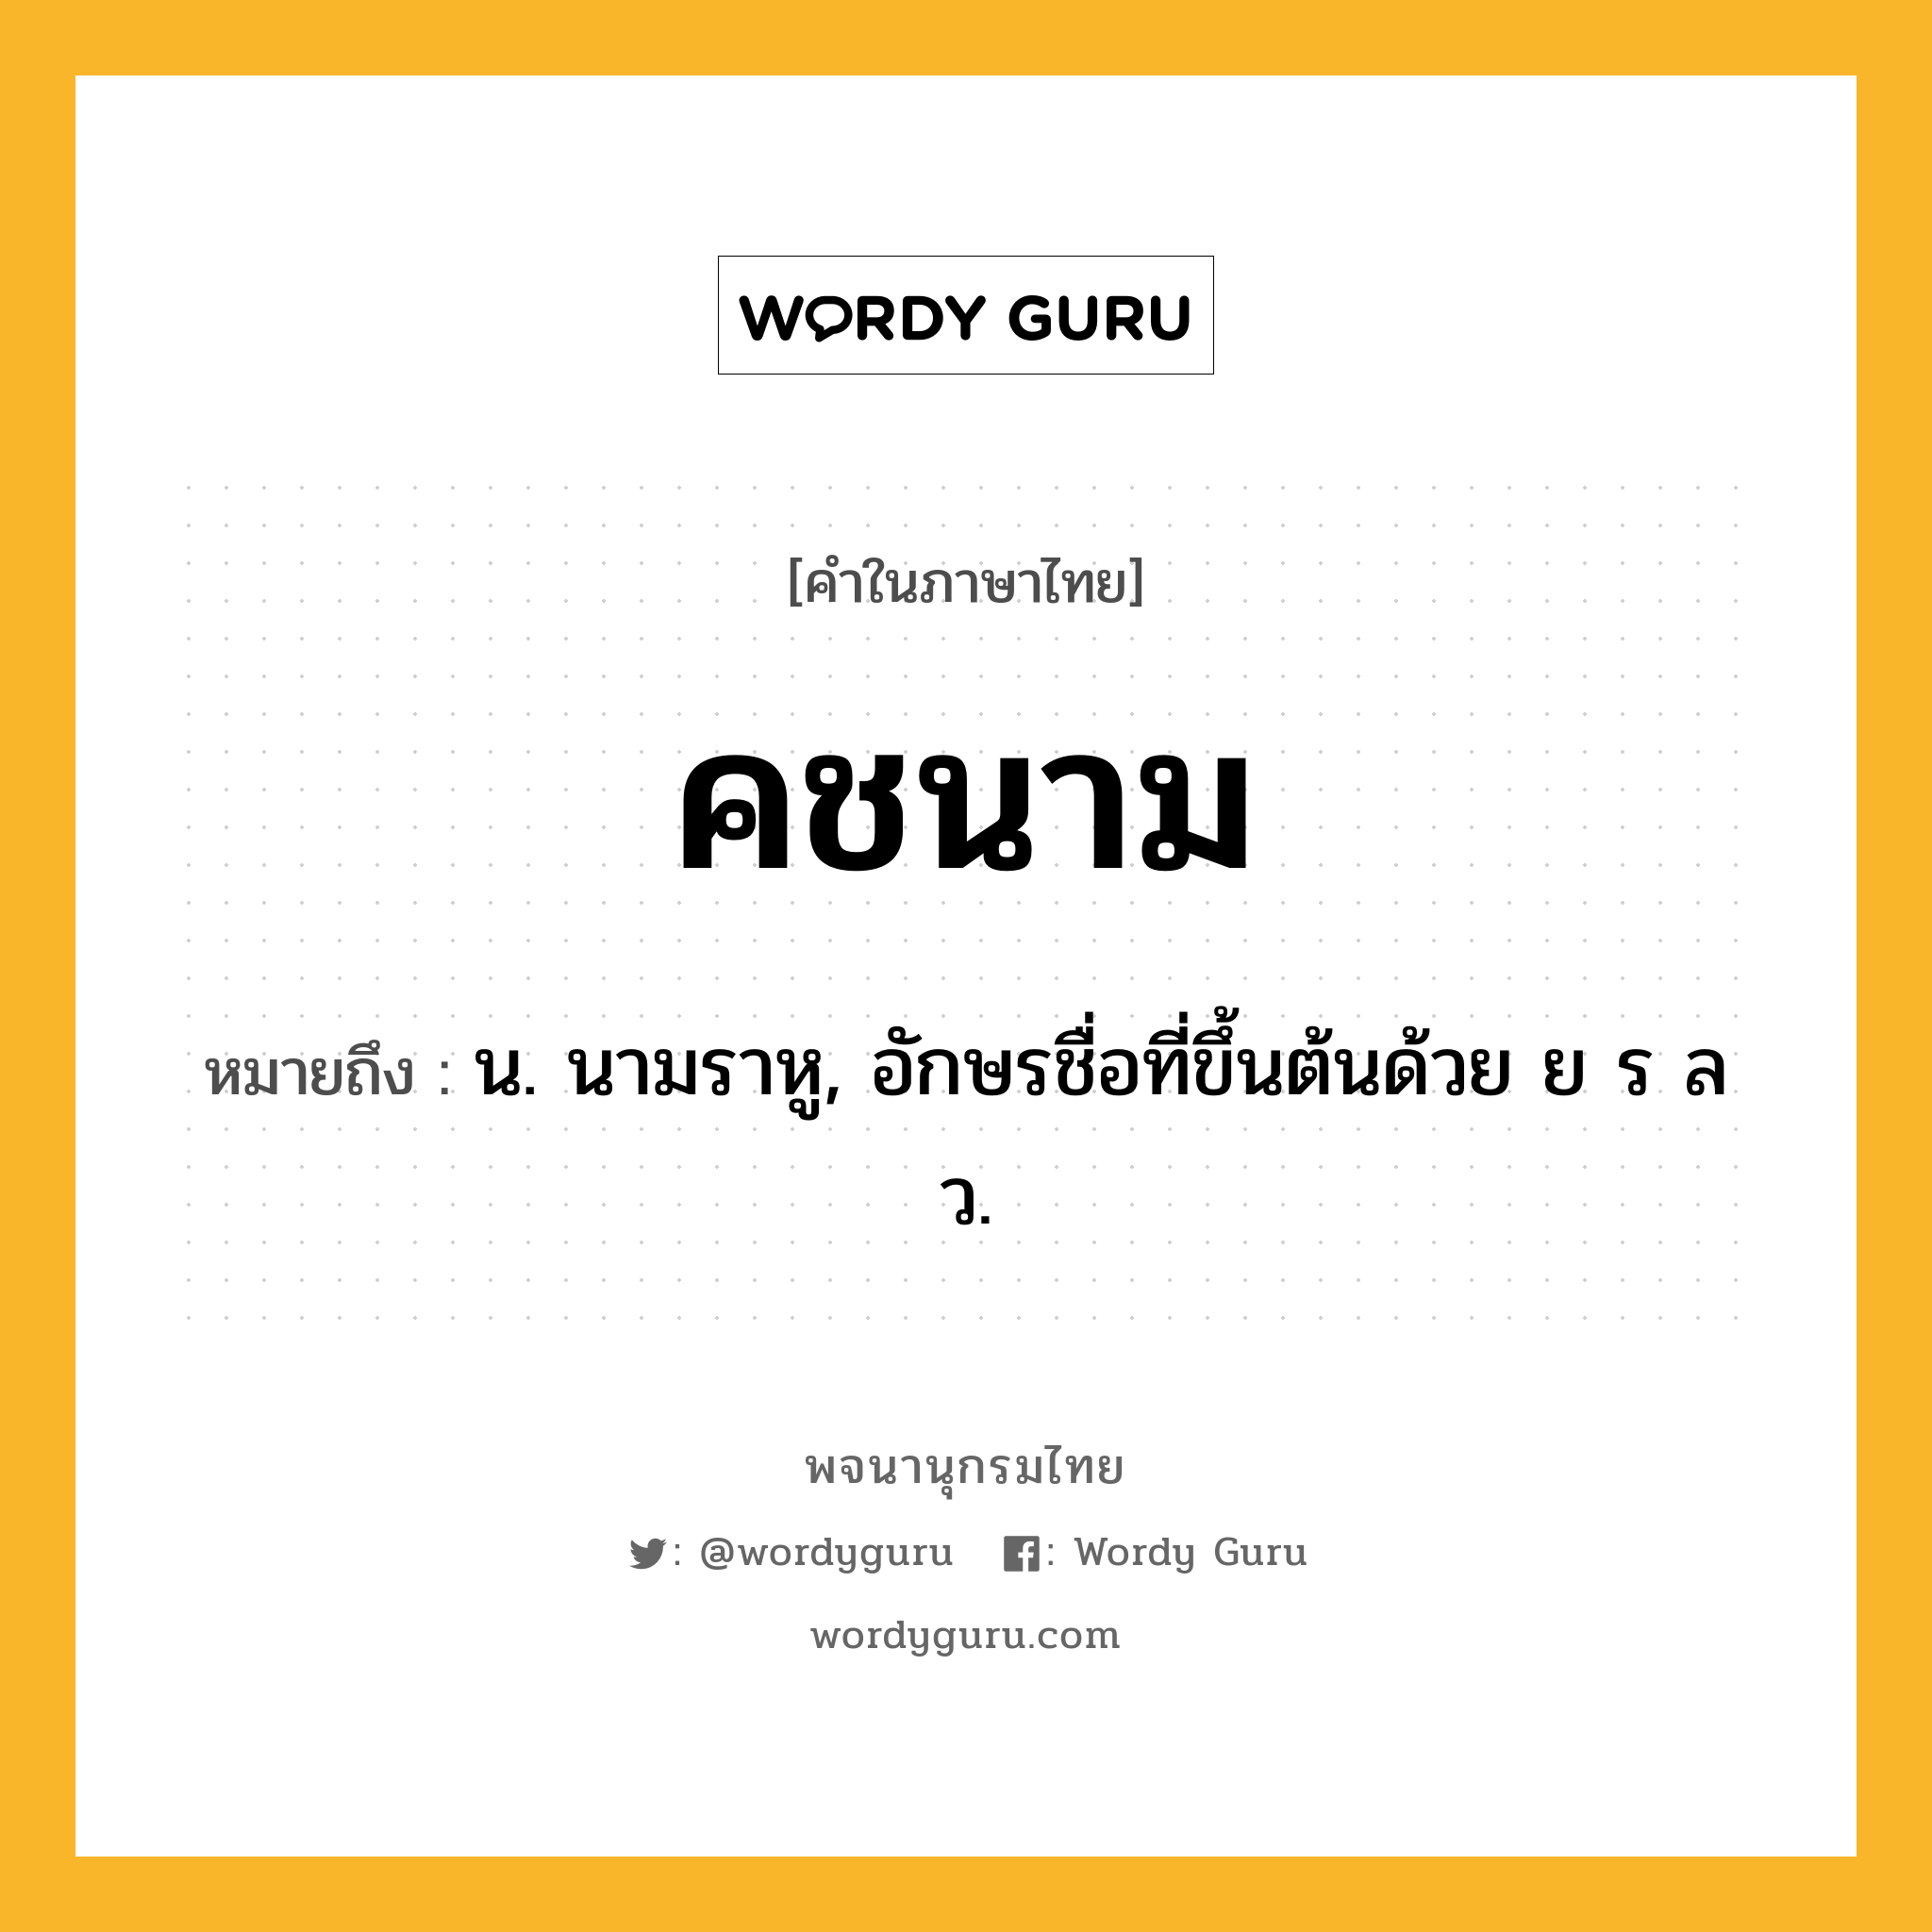 คชนาม ความหมาย หมายถึงอะไร?, คำในภาษาไทย คชนาม หมายถึง น. นามราหู, อักษรชื่อที่ขึ้นต้นด้วย ย ร ล ว.